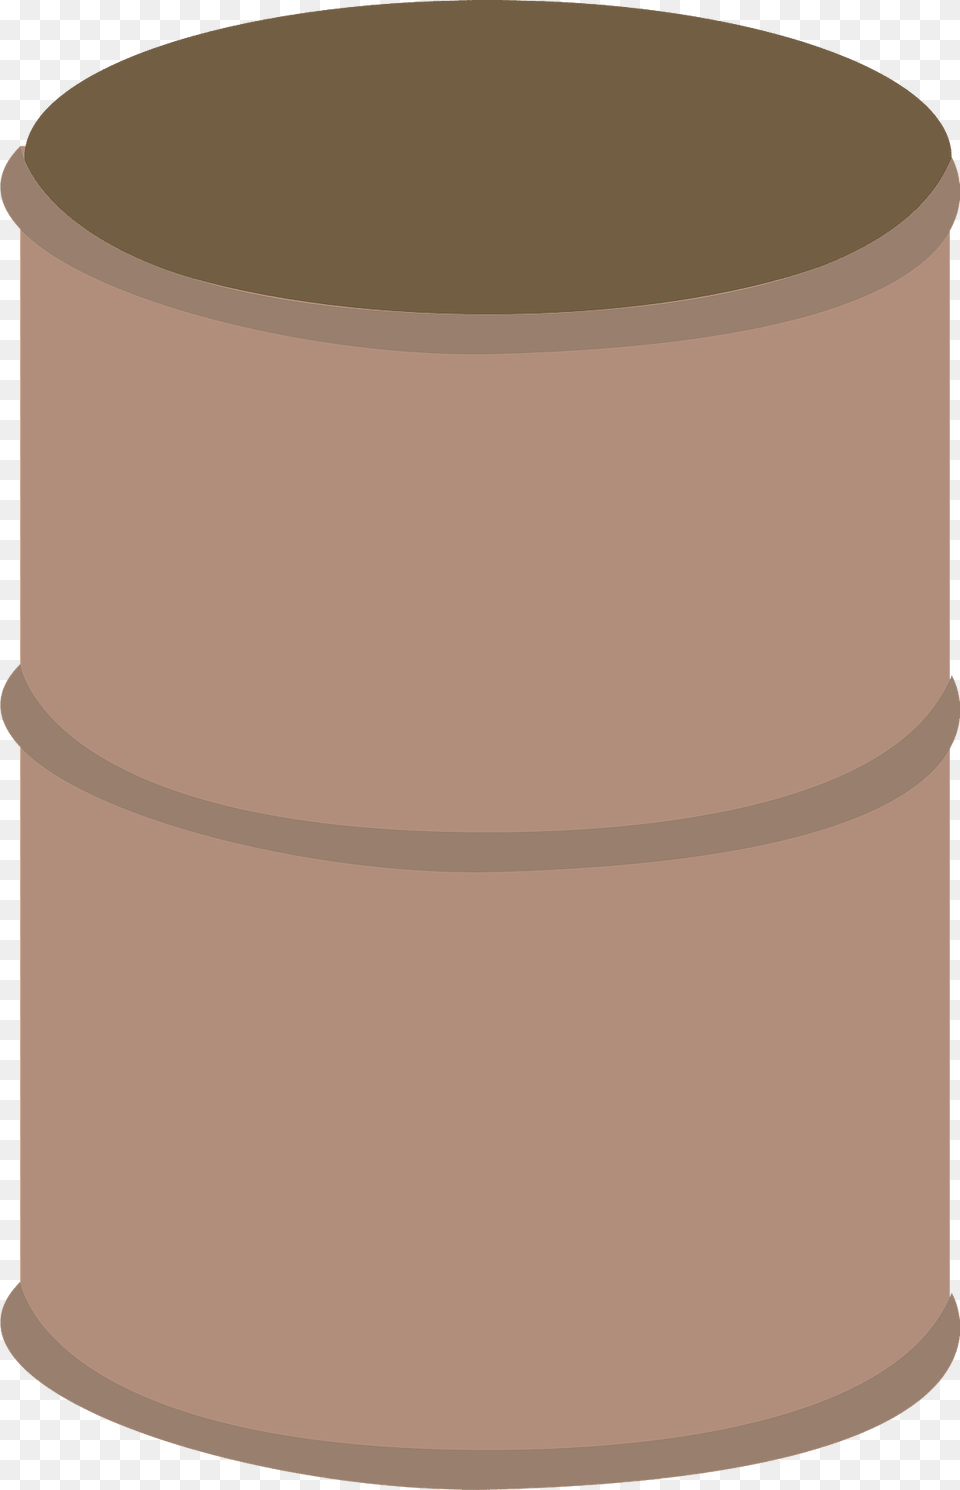 Barrel Clipart, Cylinder Free Transparent Png